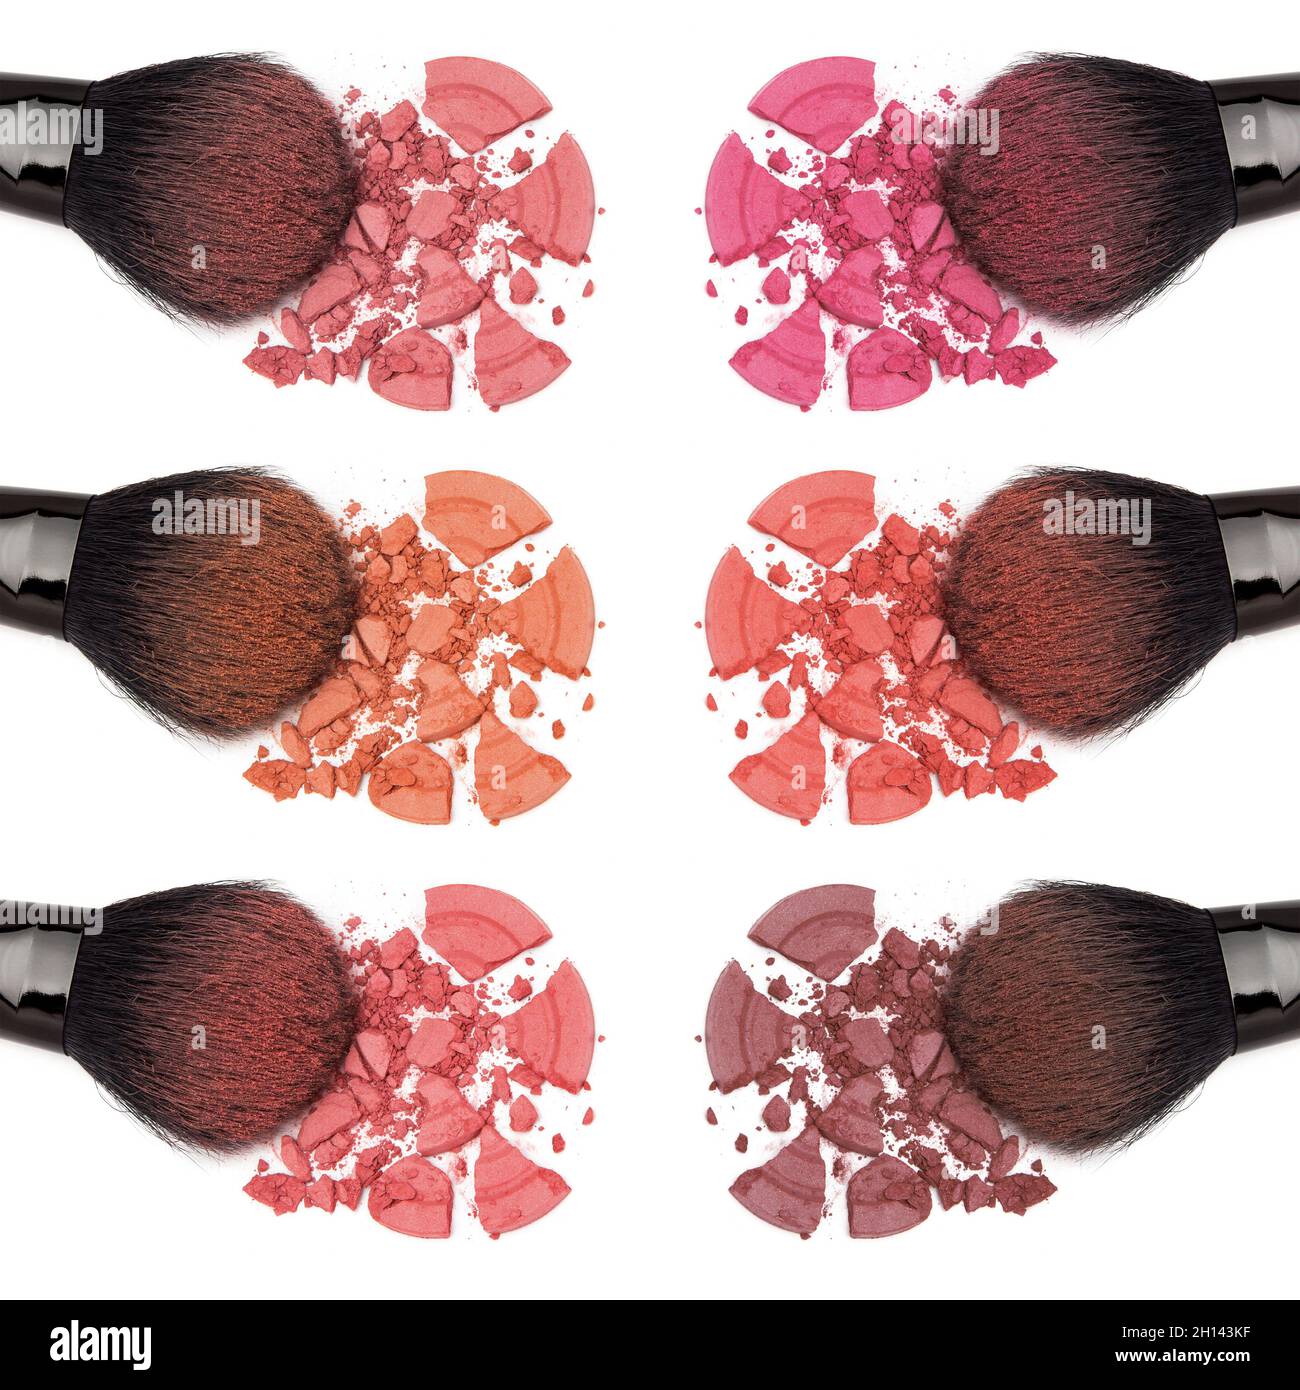 Nahaufnahme von zerbröckeltem Pulver erröten verschiedene Farbtöne mit Make-up Pinsel auf weißem Hintergrund Stockfoto